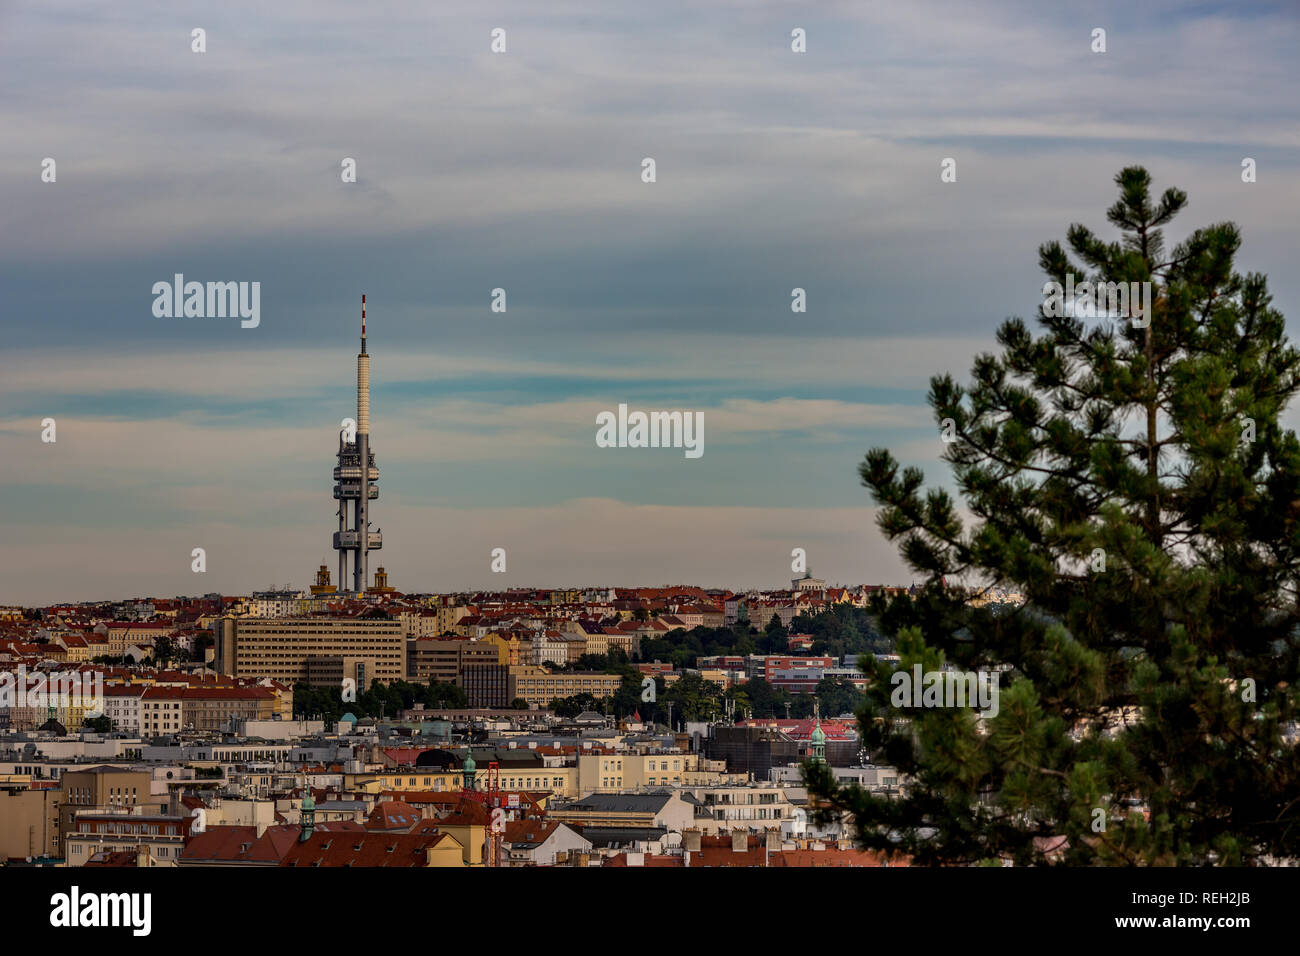 Prag, tschechische Republik - 27. AUGUST 2015: hohe Fernsehturm steht auf und stößt den Himmel, Landschaft Beobachtung View Point in der Hauptstadt Prag, Tschechische Stockfoto